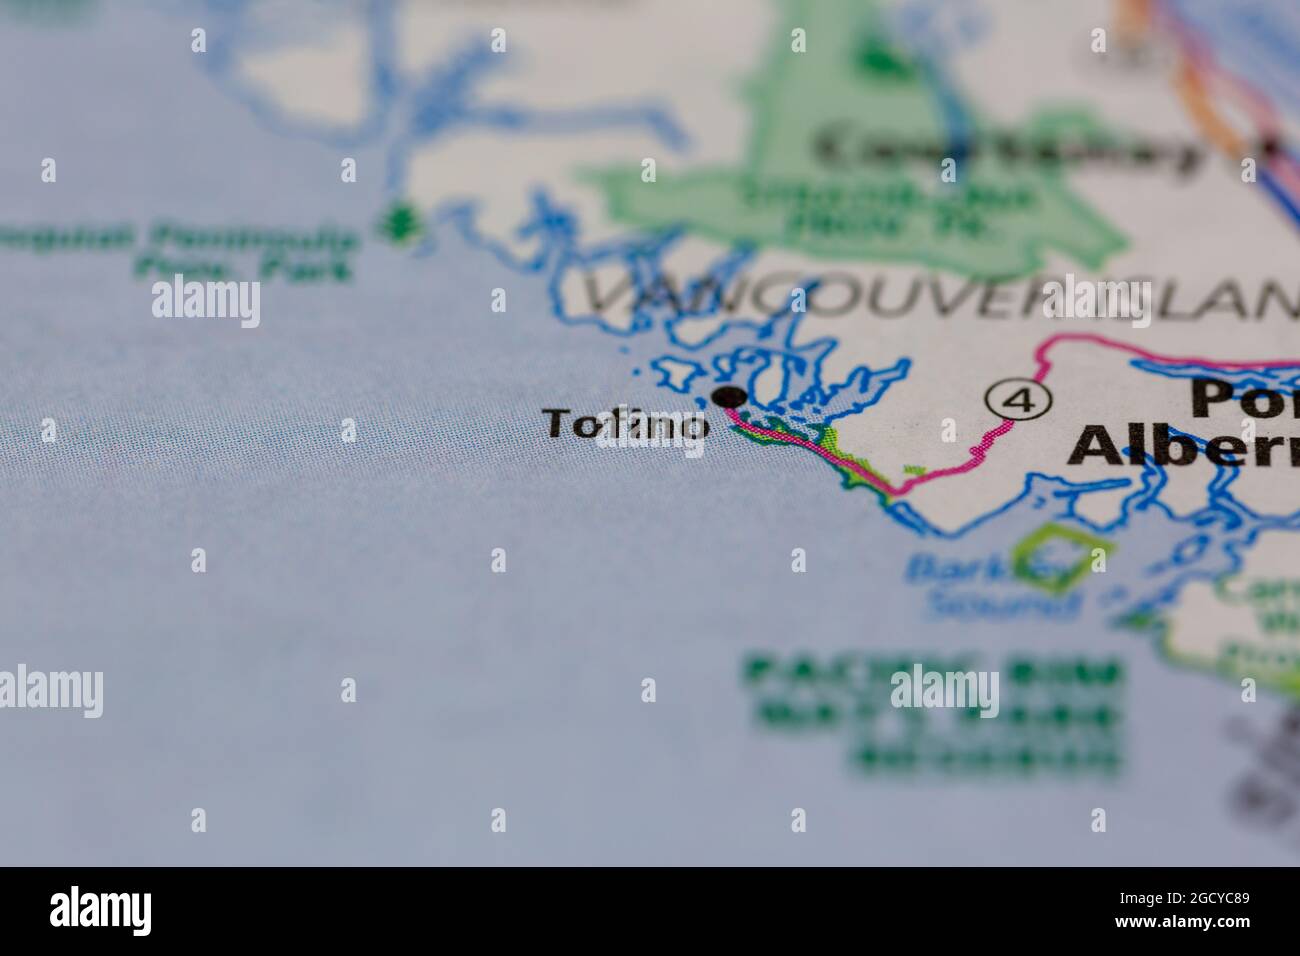 Tofino Vancouver Island Canada se muestra en un mapa de carreteras o en un mapa geográfico Foto de stock